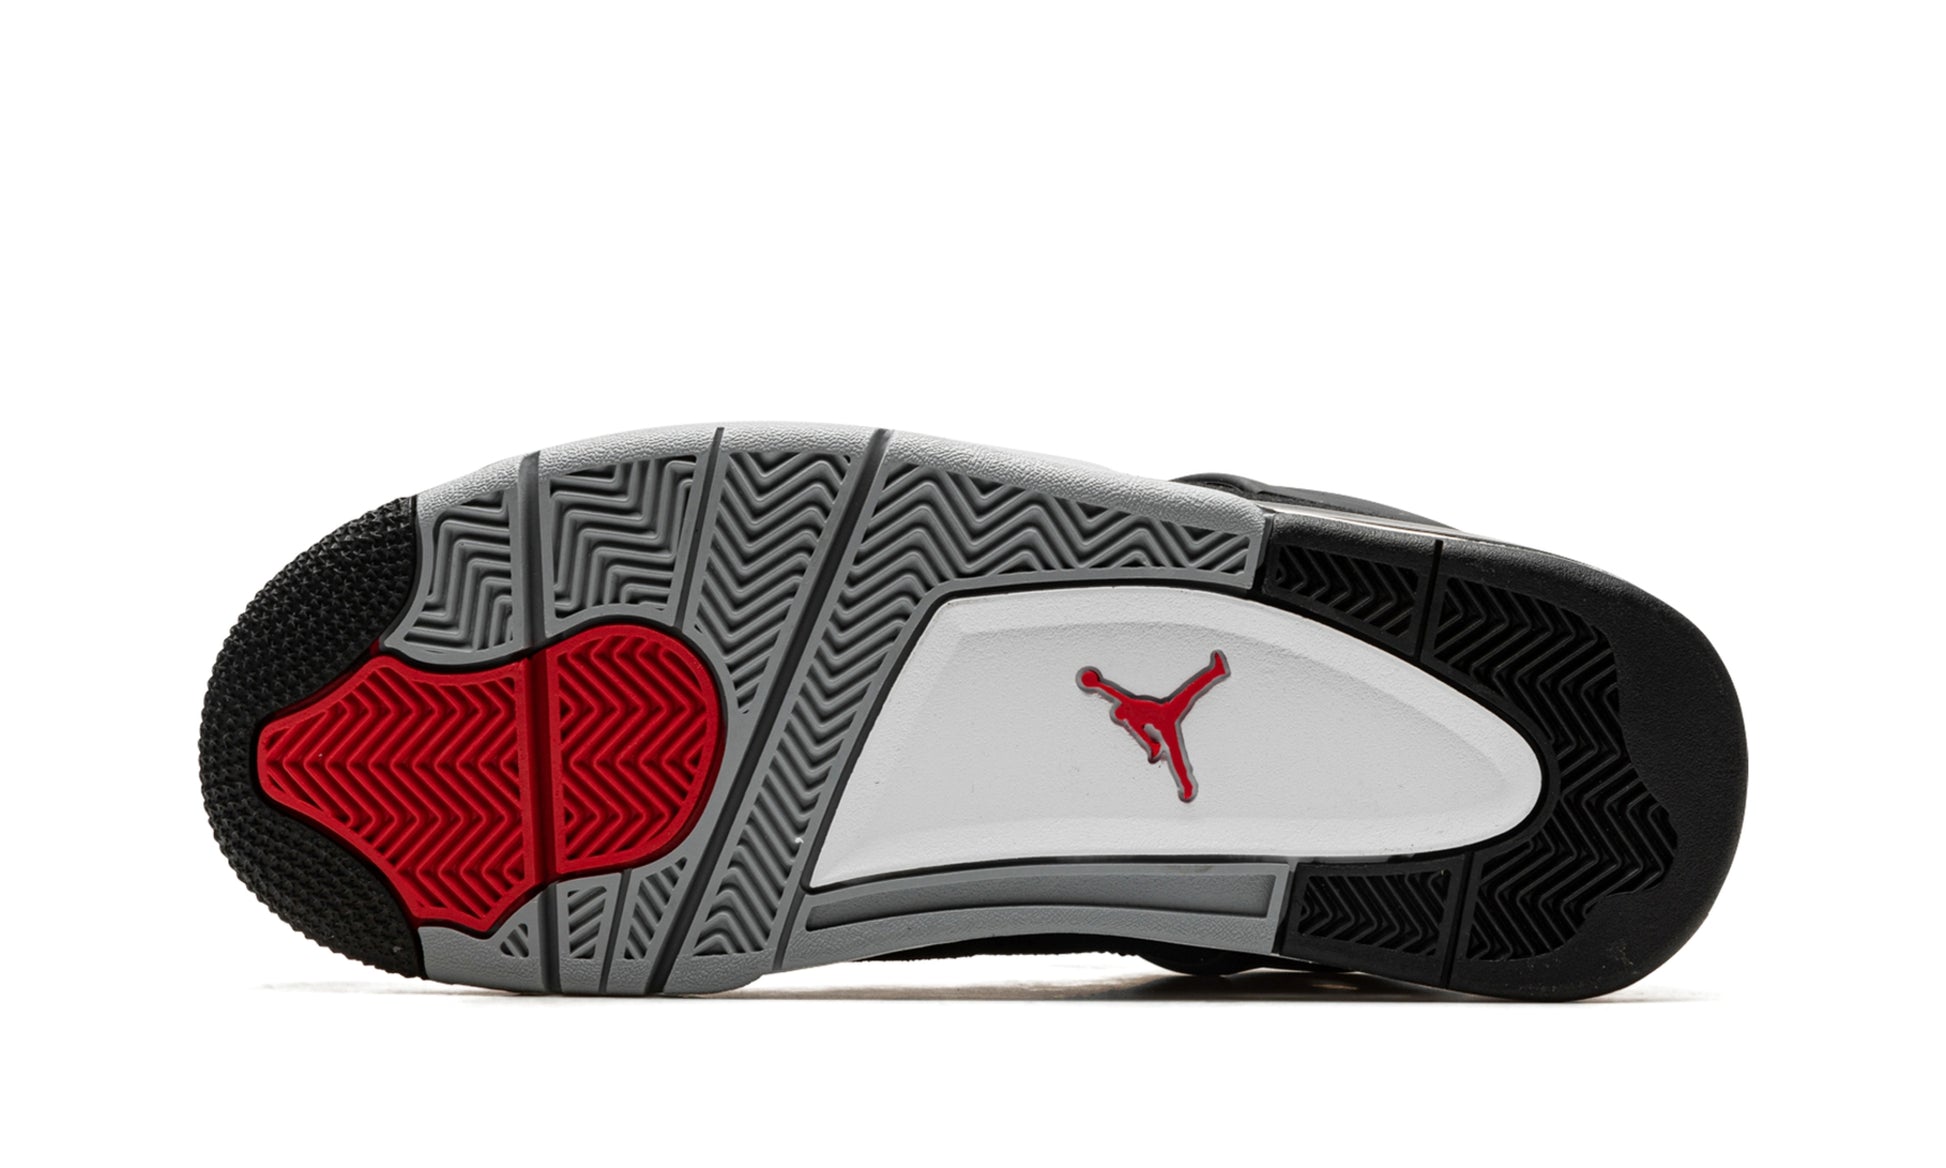 Nike Sneakers Air Jordan 4 Retro SE Canvas Black